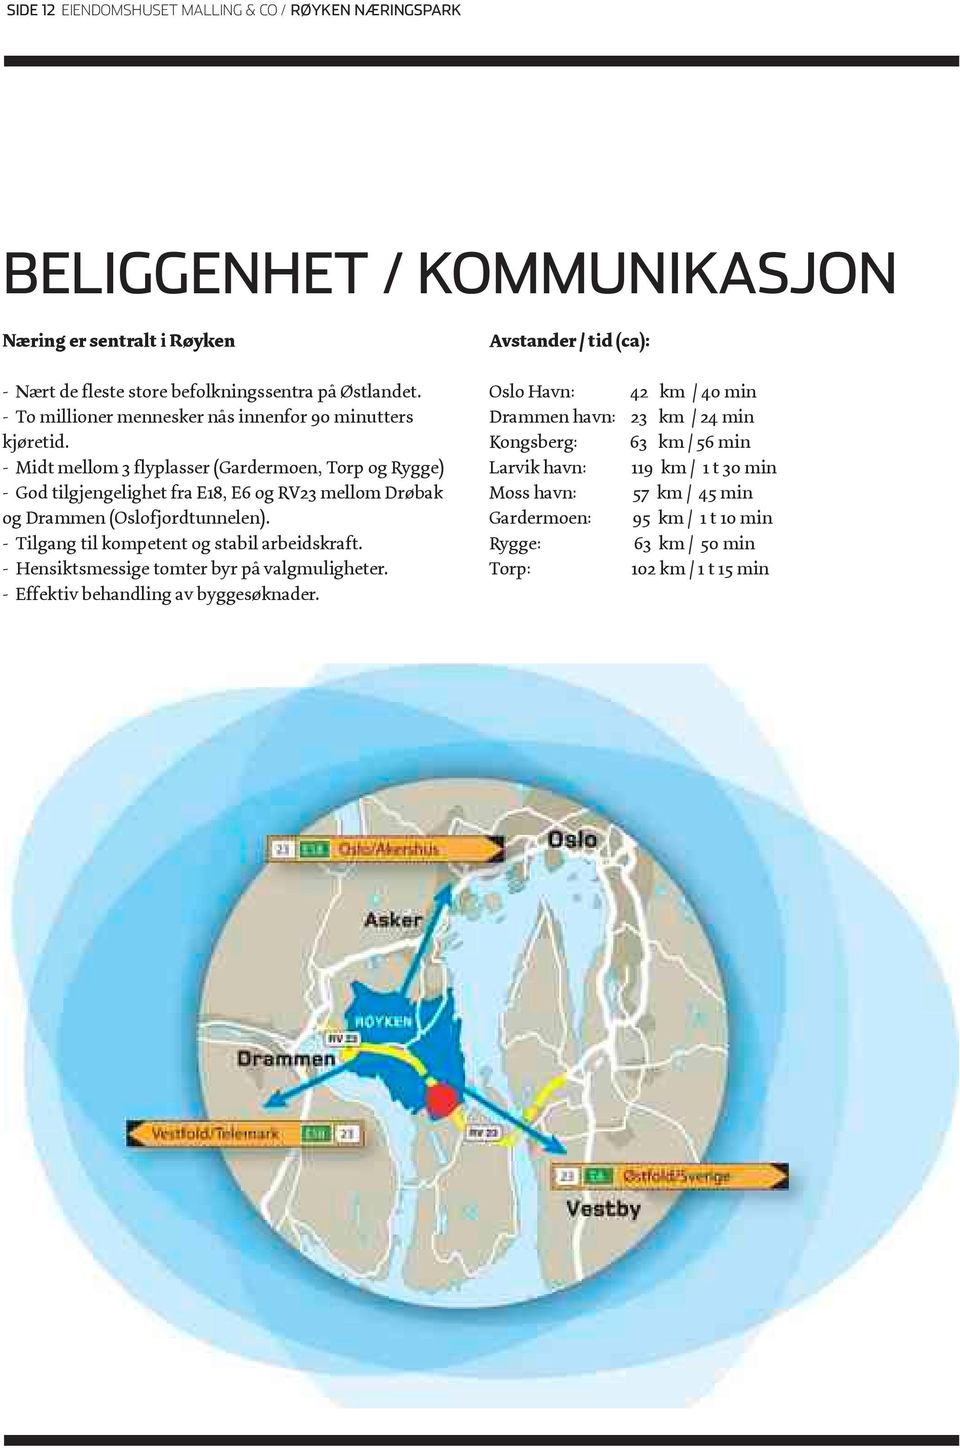 - Midt mellom 3 flyplasser (Gardermoen, Torp og Rygge) - God tilgjengelighet fra E18, E6 og RV23 mellom Drøbak og Drammen (Oslofjordtunnelen).